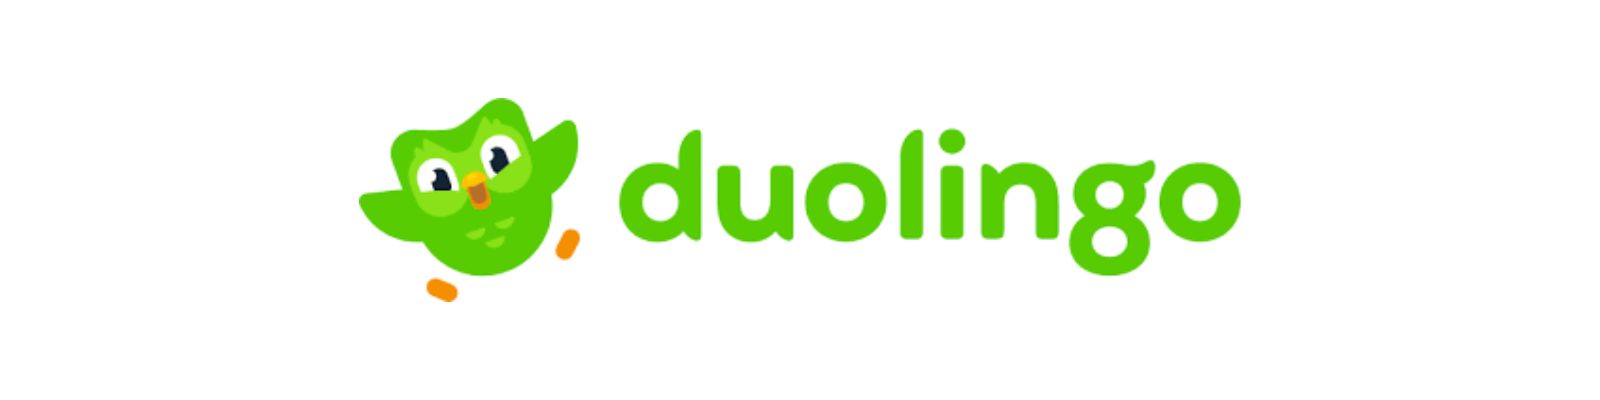 Duolingo é confiável? Conheça todos os detalhes!